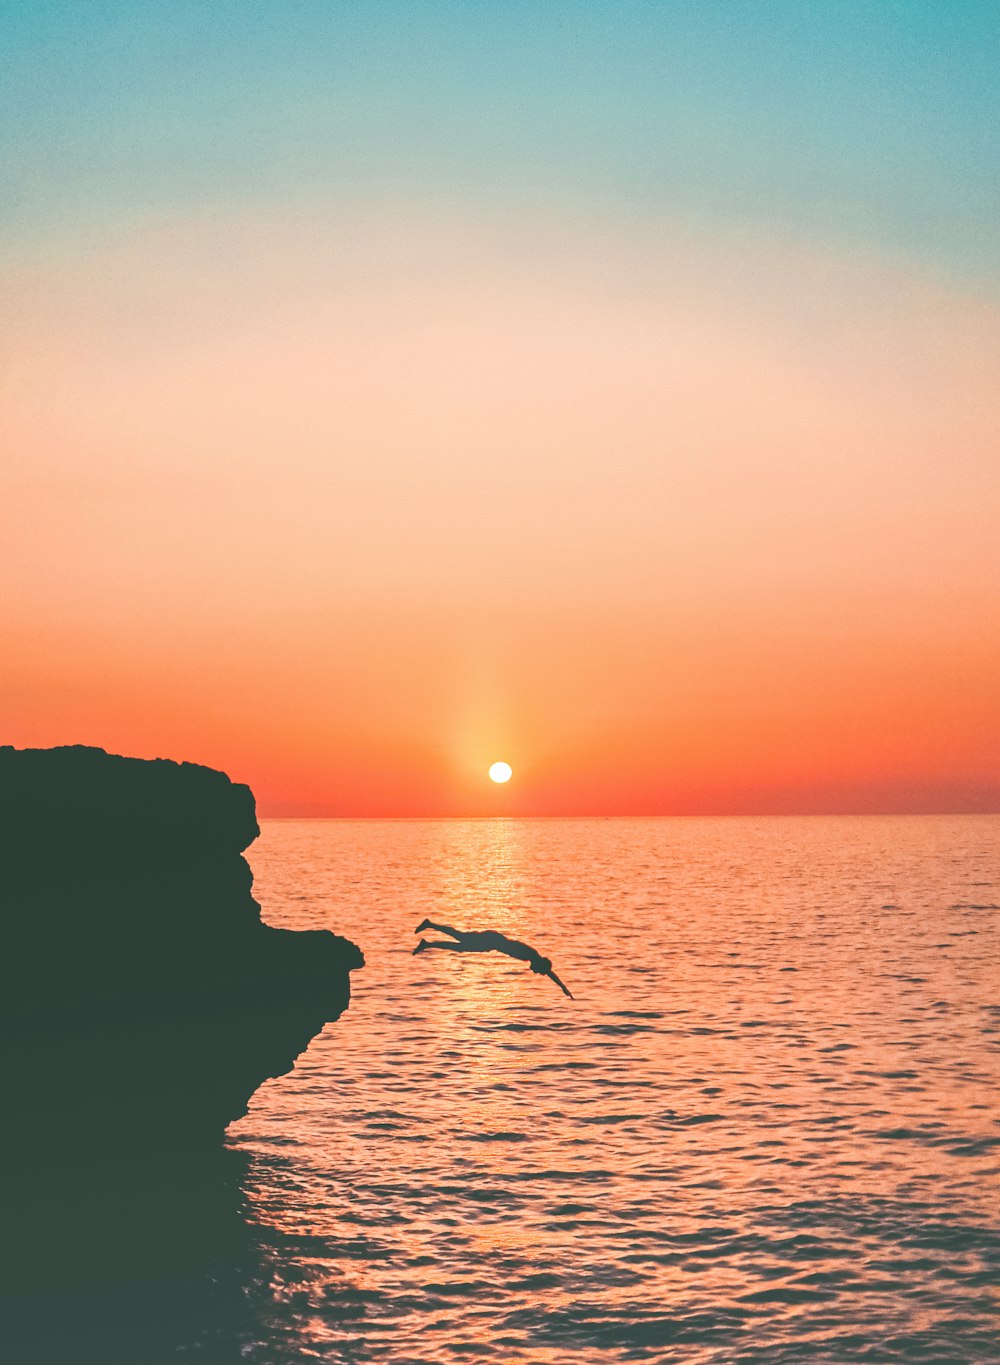 Un oiseau survolant un plan d’eau au coucher du soleil